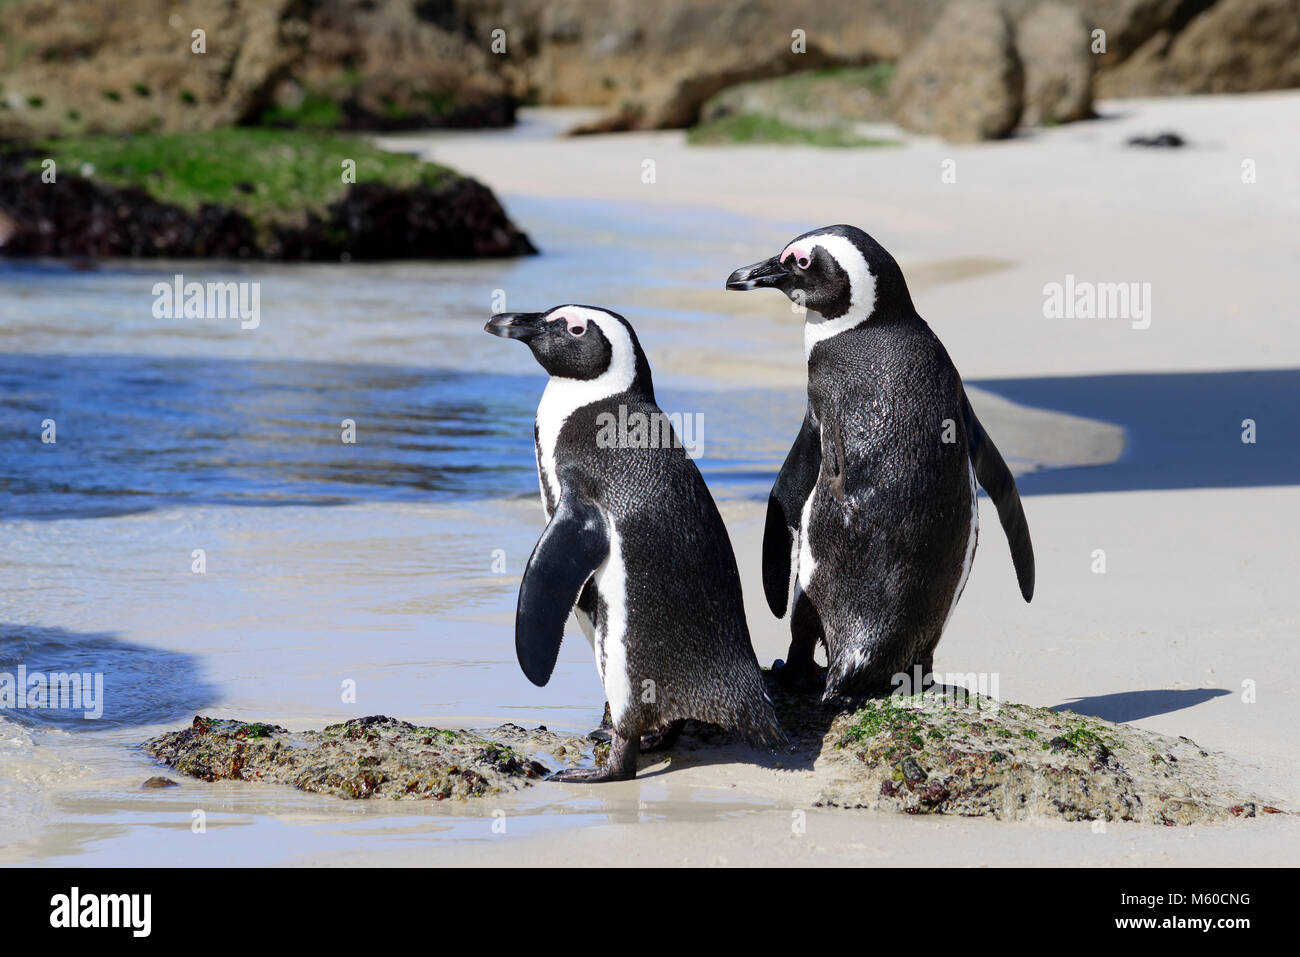 Jackass Penguin, manchot du Cap (Spheniscus demersus). Paire sur une plage. La plage de Boulders, Afrique du Sud Banque D'Images